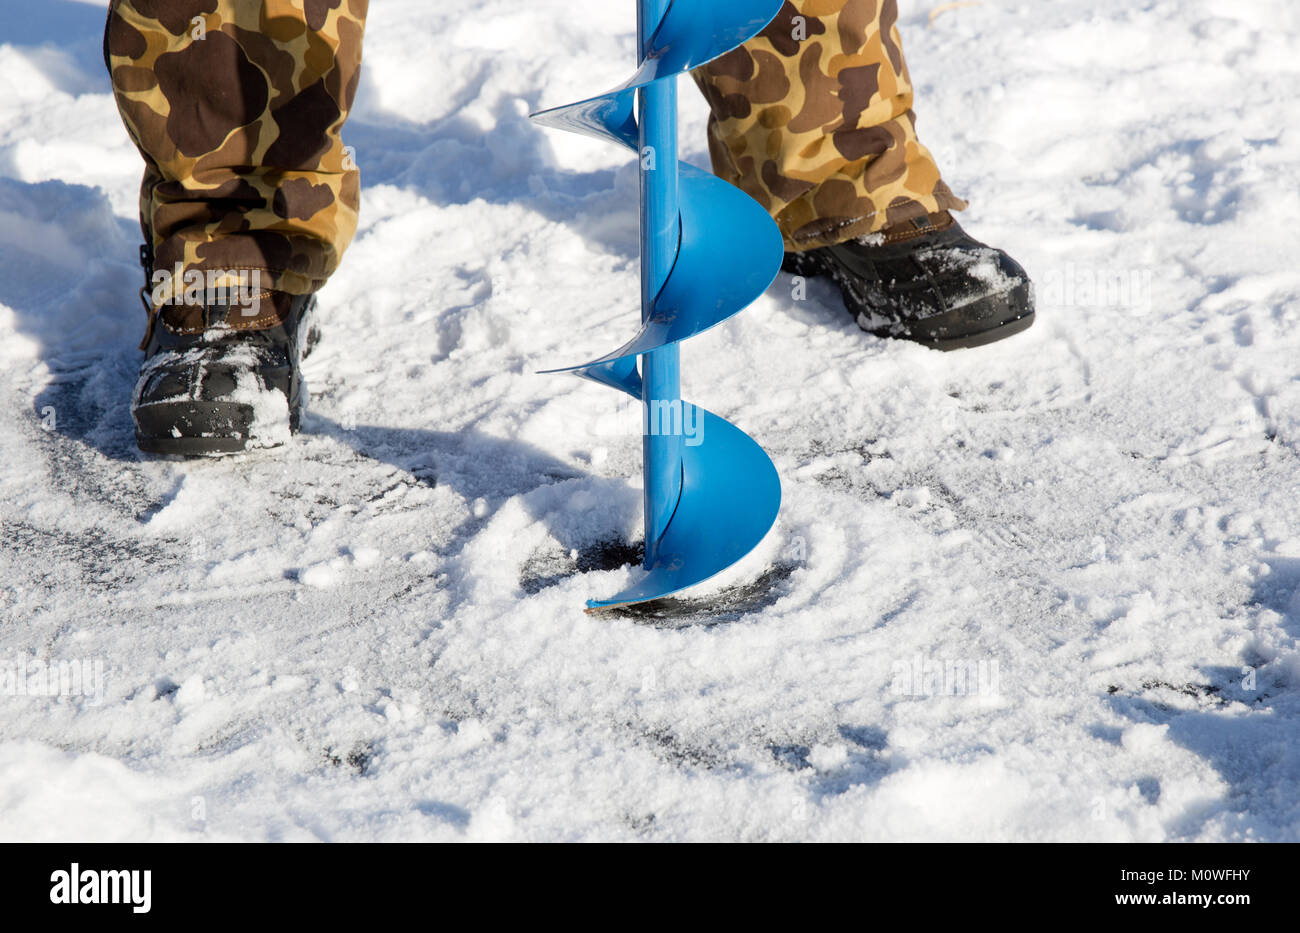 Una persona la perforación de un agujero en el hielo de un lago congelado utilizando un hielo auguer (un tornillo helicoidal blade). Foto de stock